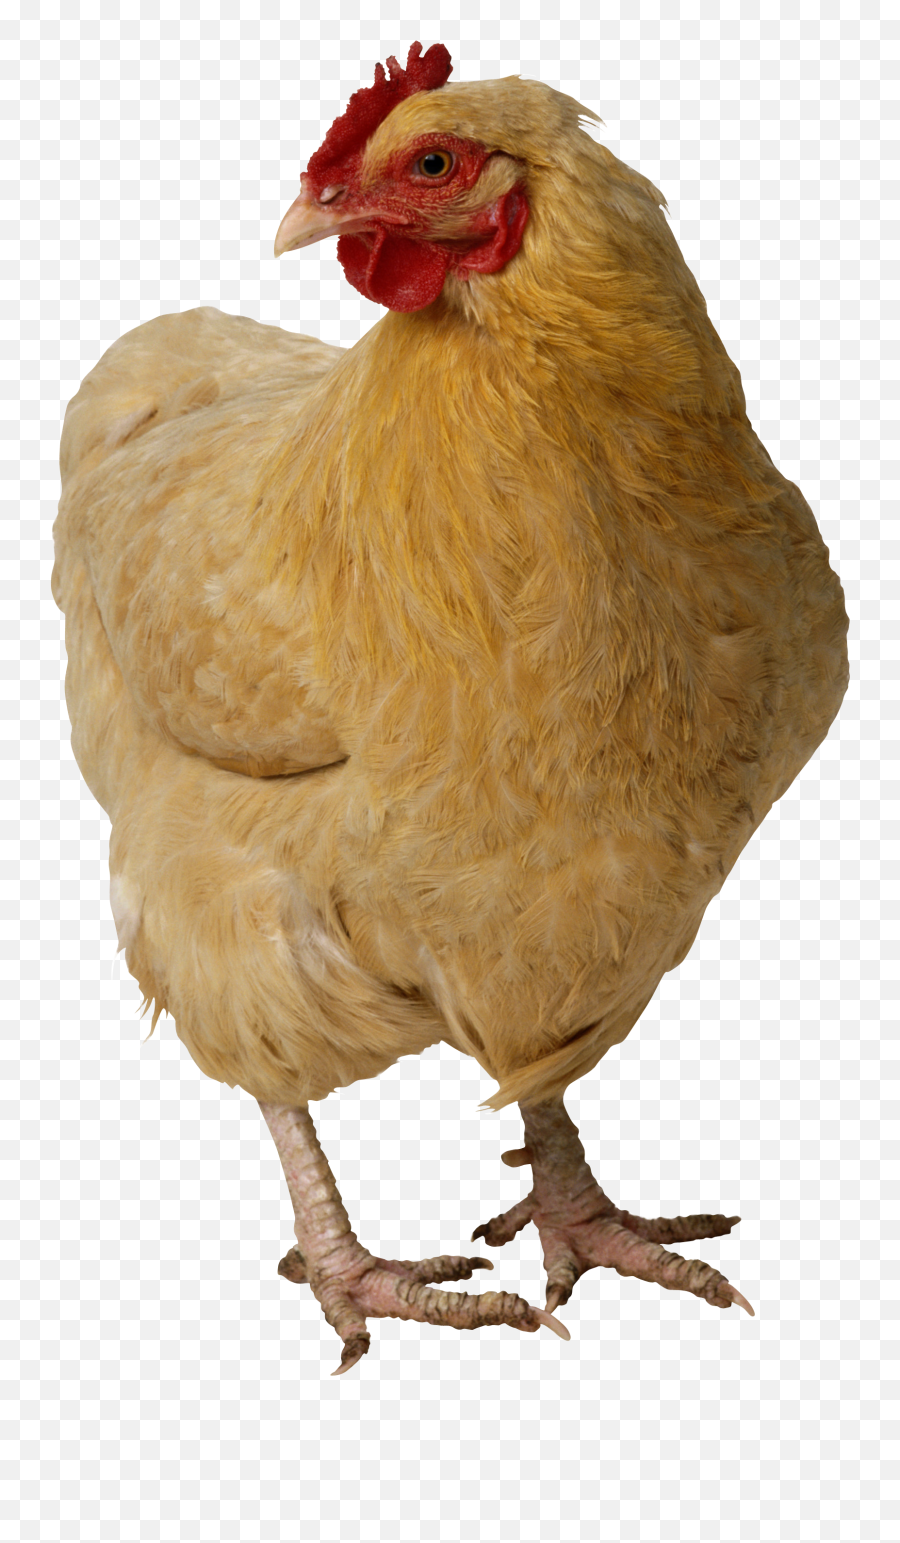 Chicken Png Image - Chicken Pet Emoji,Chicken Png